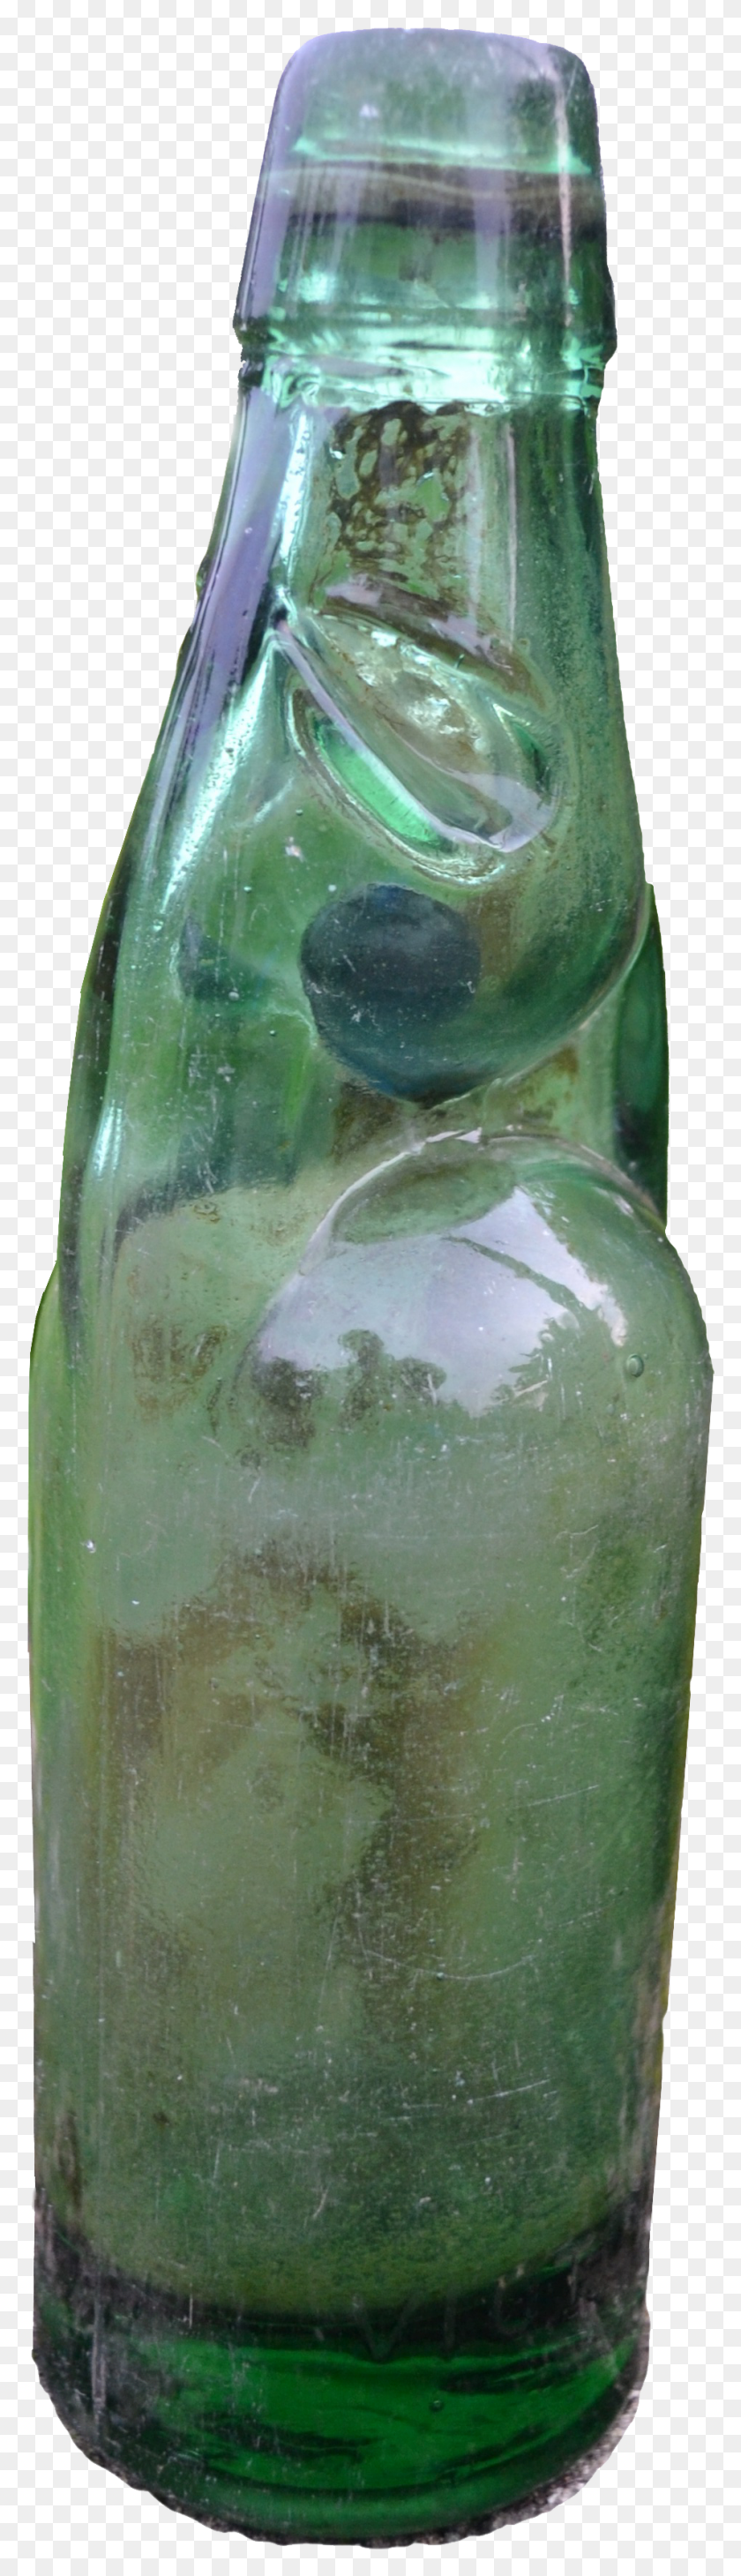 948x3477 Codd Neck Soda Water Bottle From Kerala Paneer Soda Bottle Descargar Hd Png